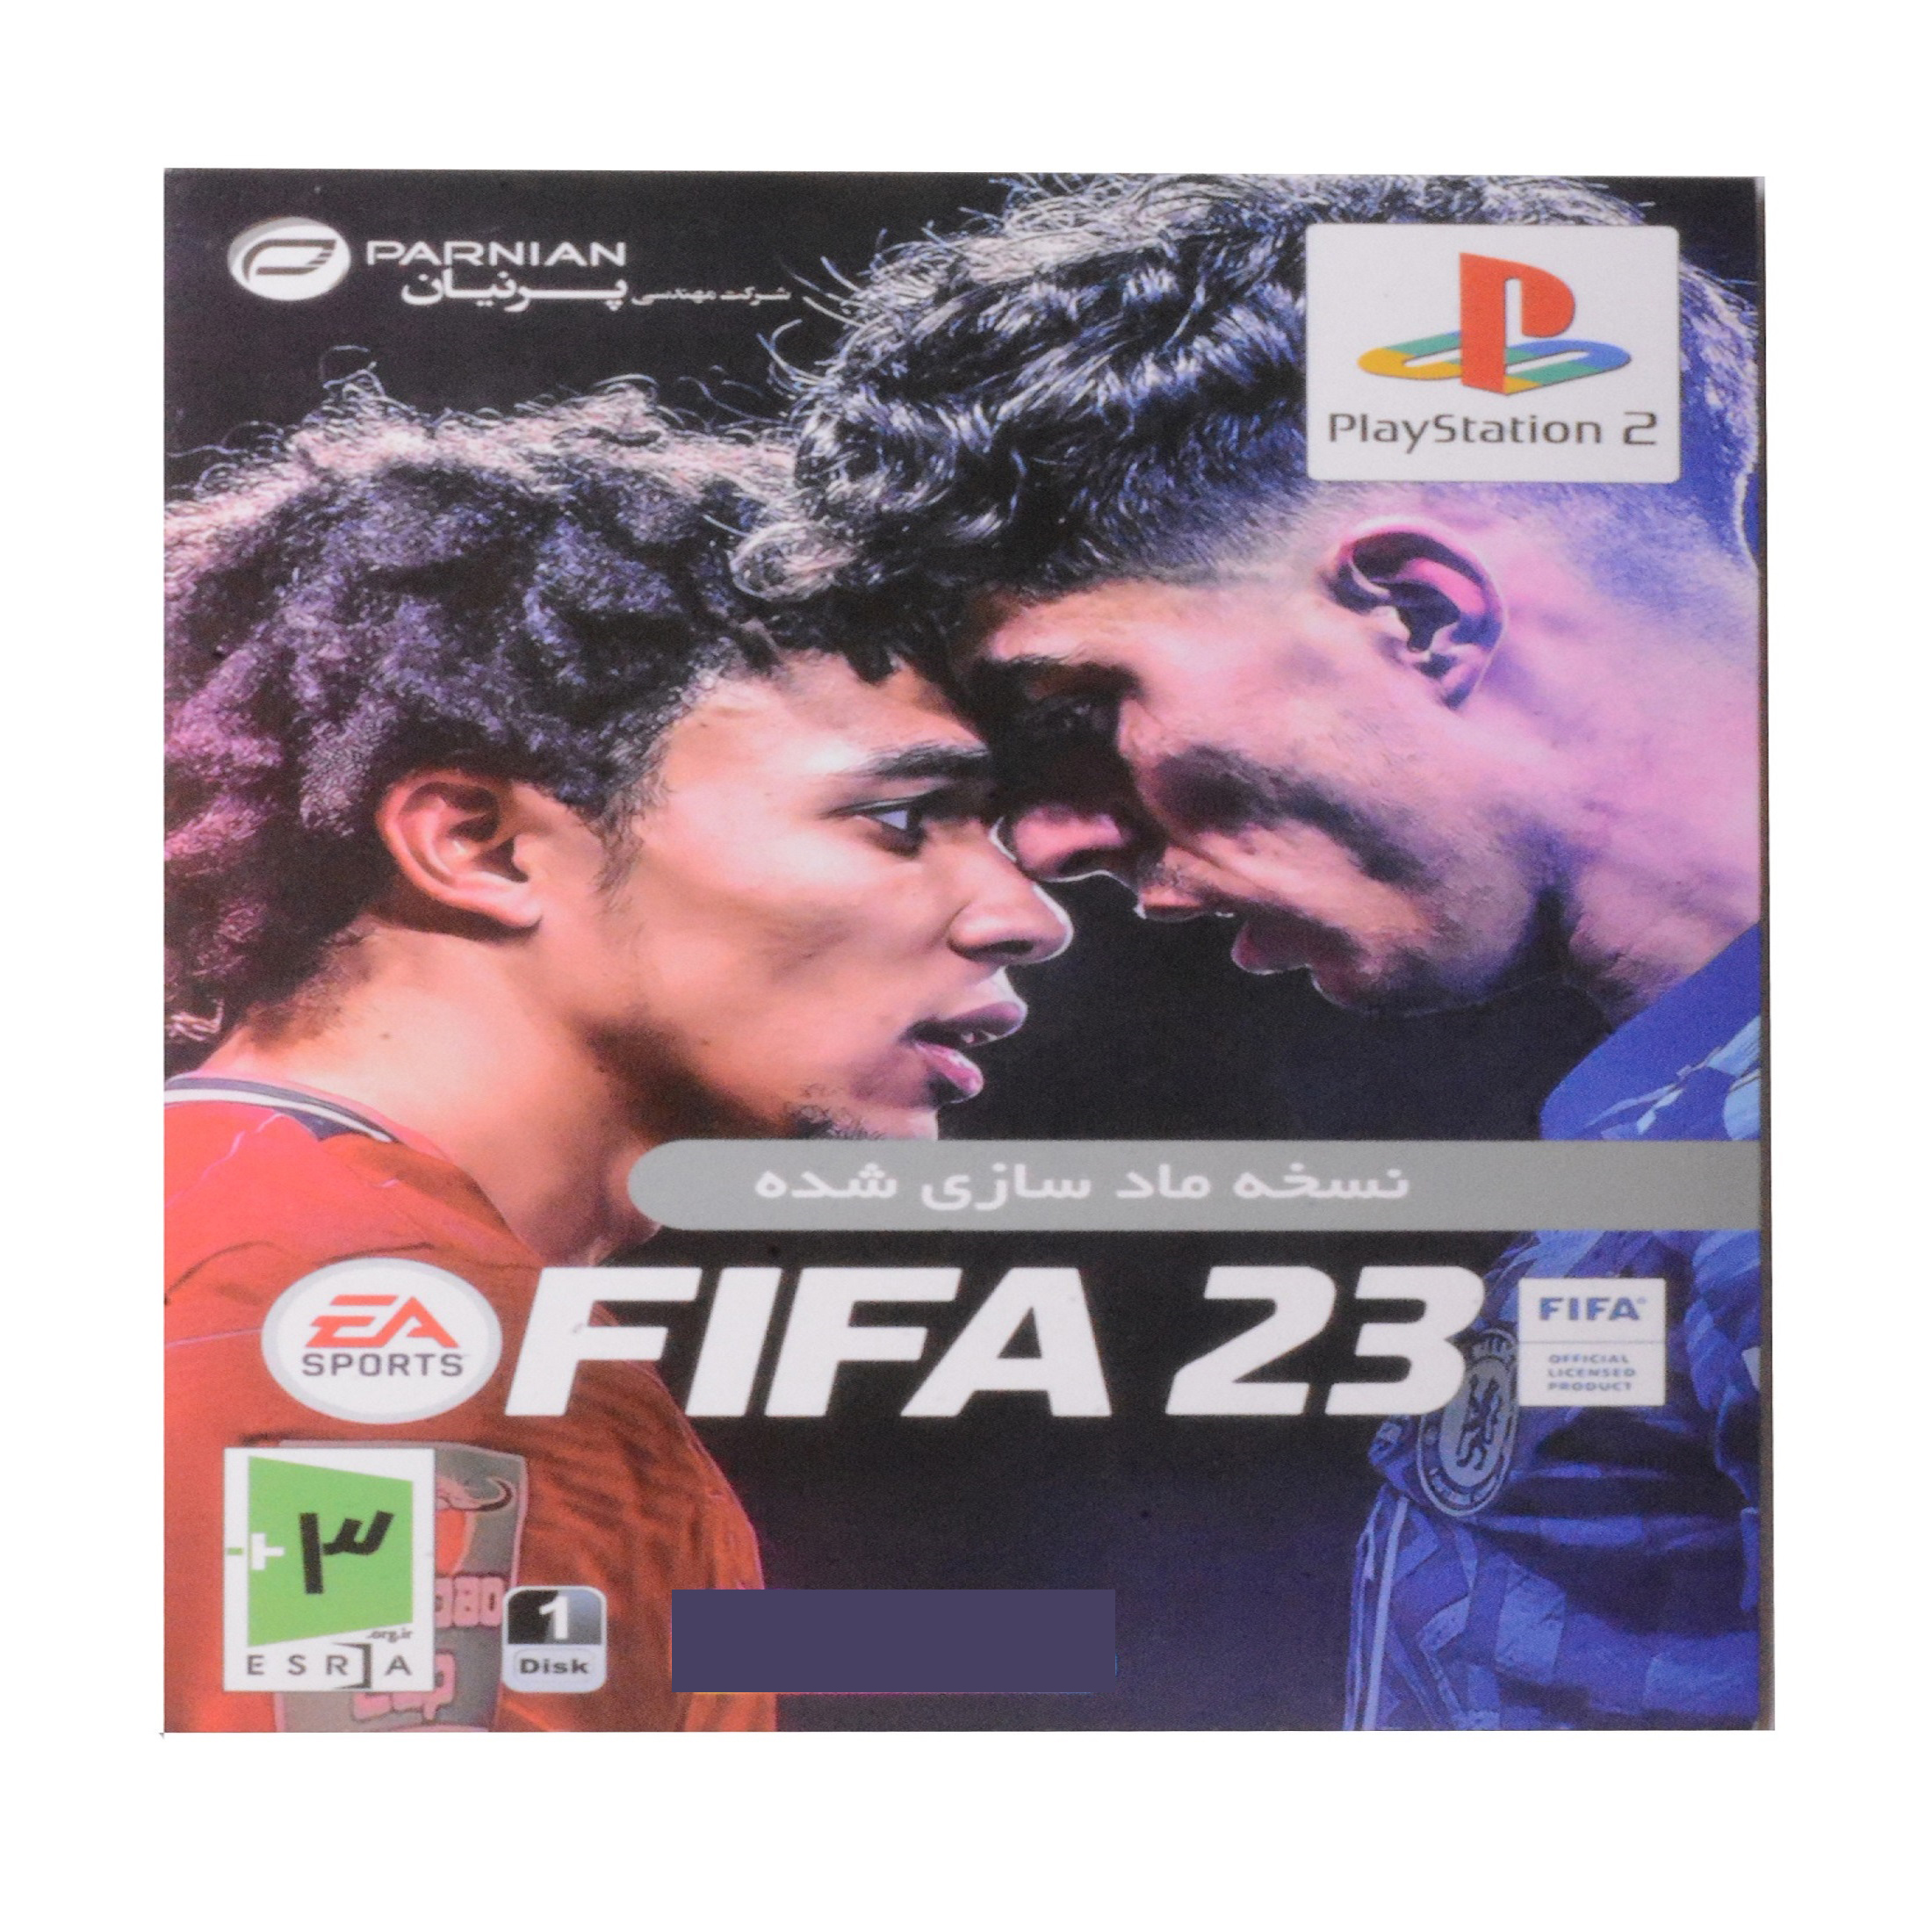 بازی فیفا 23 مخصوص پلی استیشن 2 شرکت پرنیان 